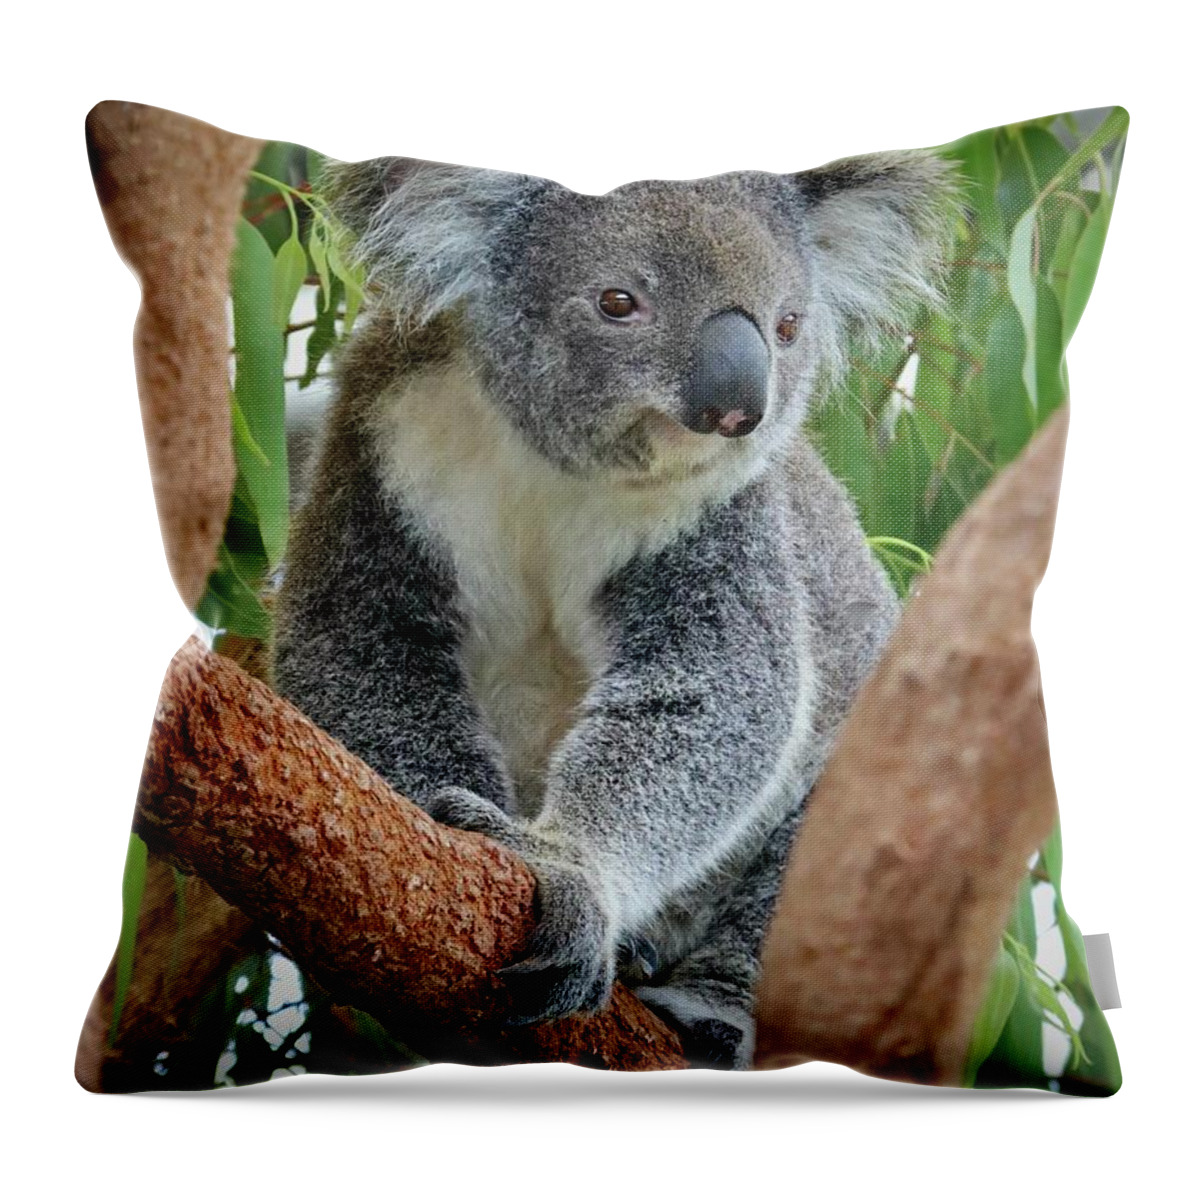 Koala Throw Pillow featuring the photograph Koala by Sarah Lilja